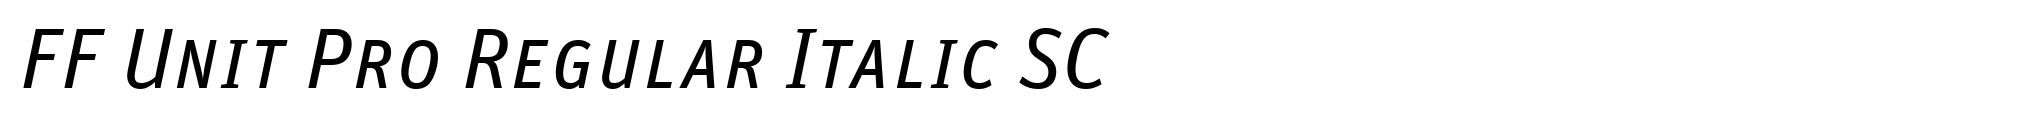 FF Unit Pro Regular Italic SC image